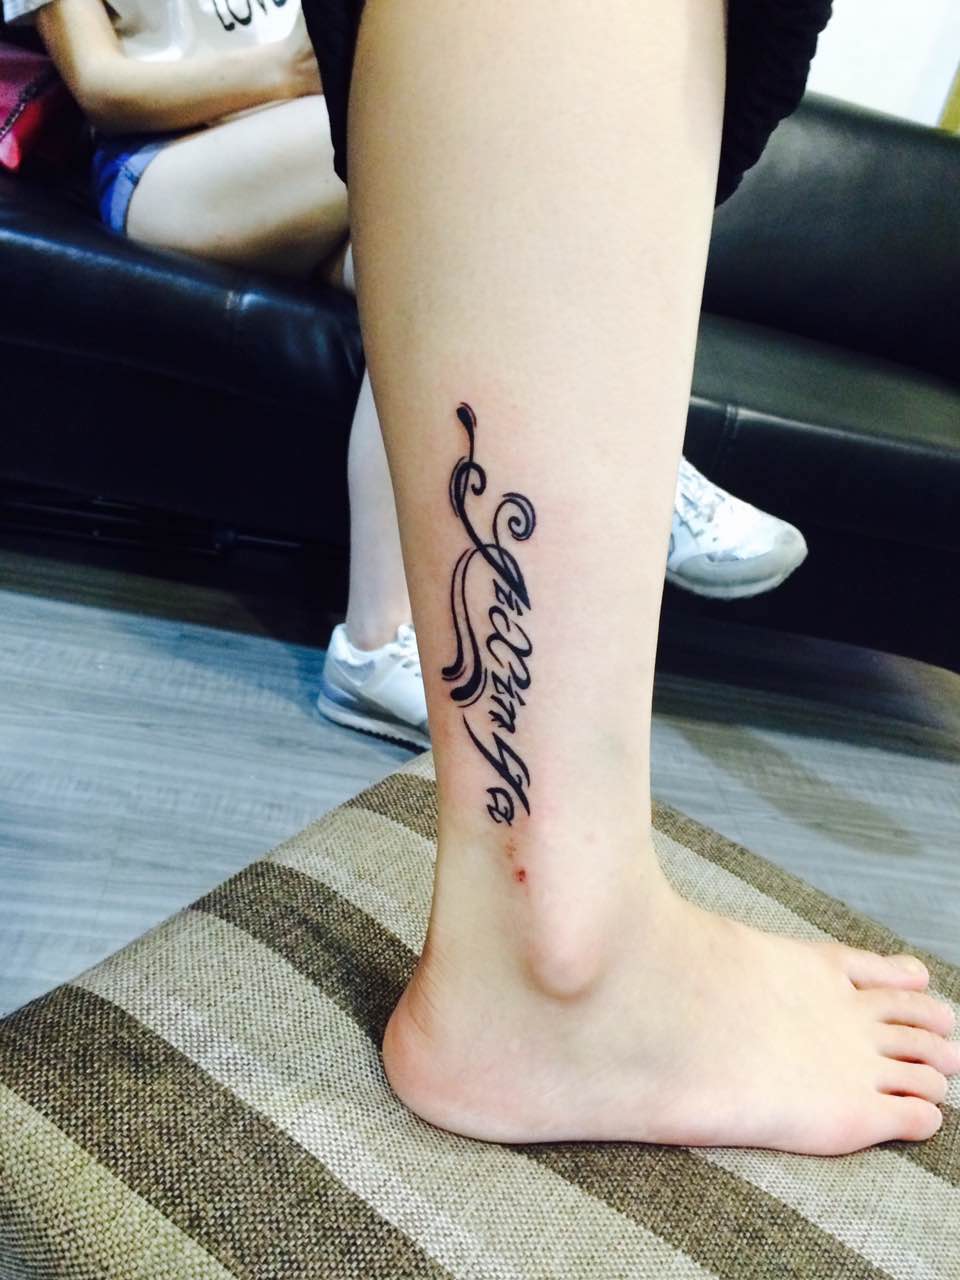 落落大方的田小姐小腿上的花式字母纹身图案